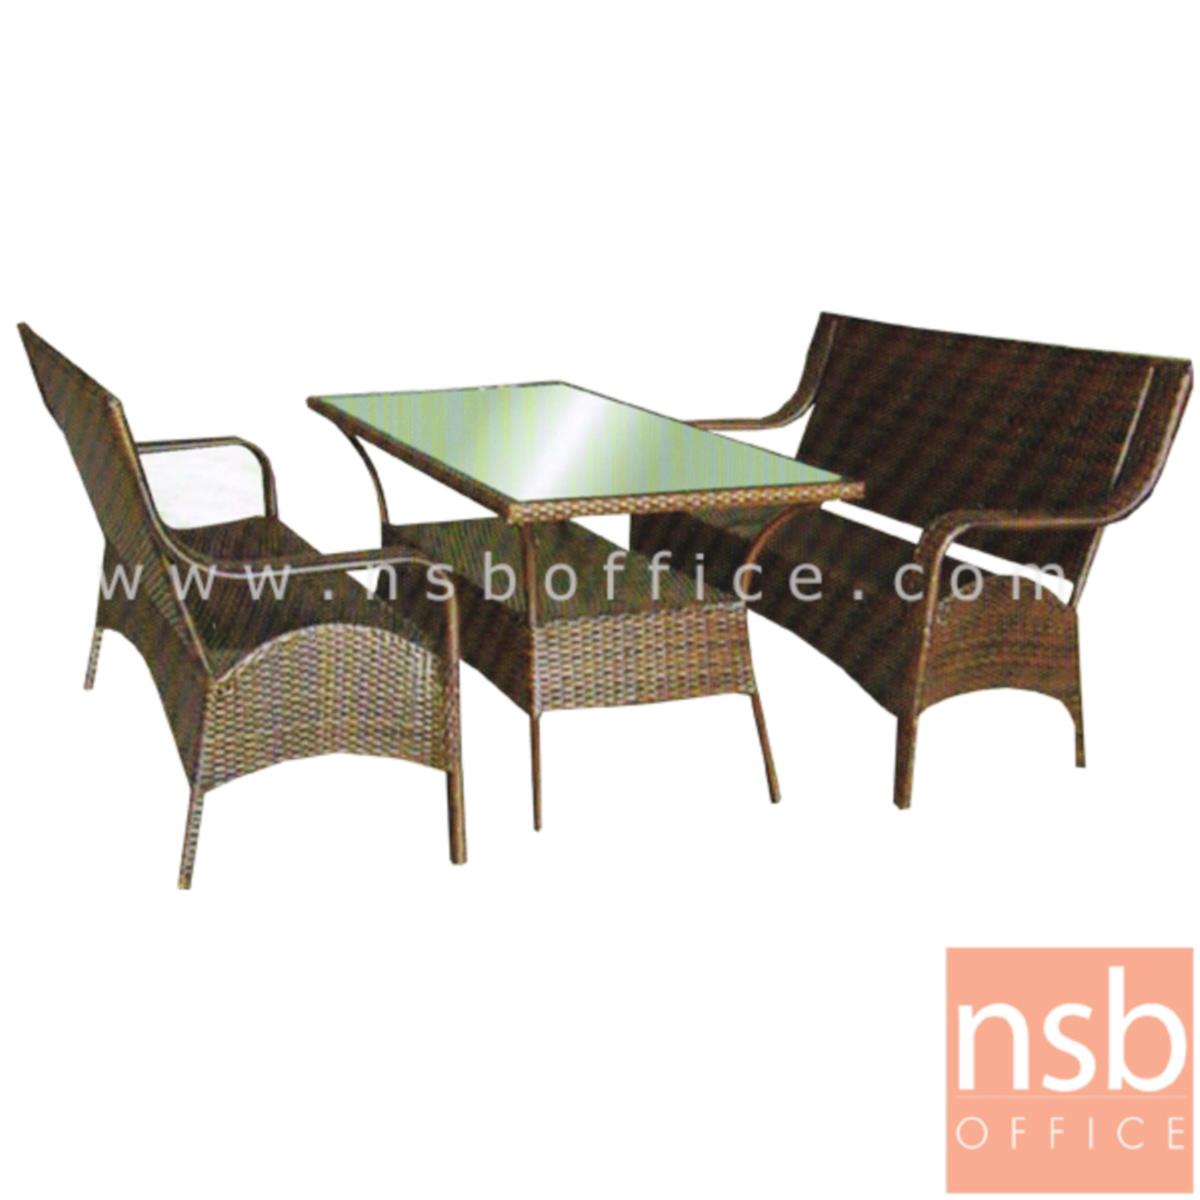 G11A156: ชุดโต๊ะเก้าอี้หวายเทียม 2 ที่นั่ง  รุ่น Rayana (รายานา)  